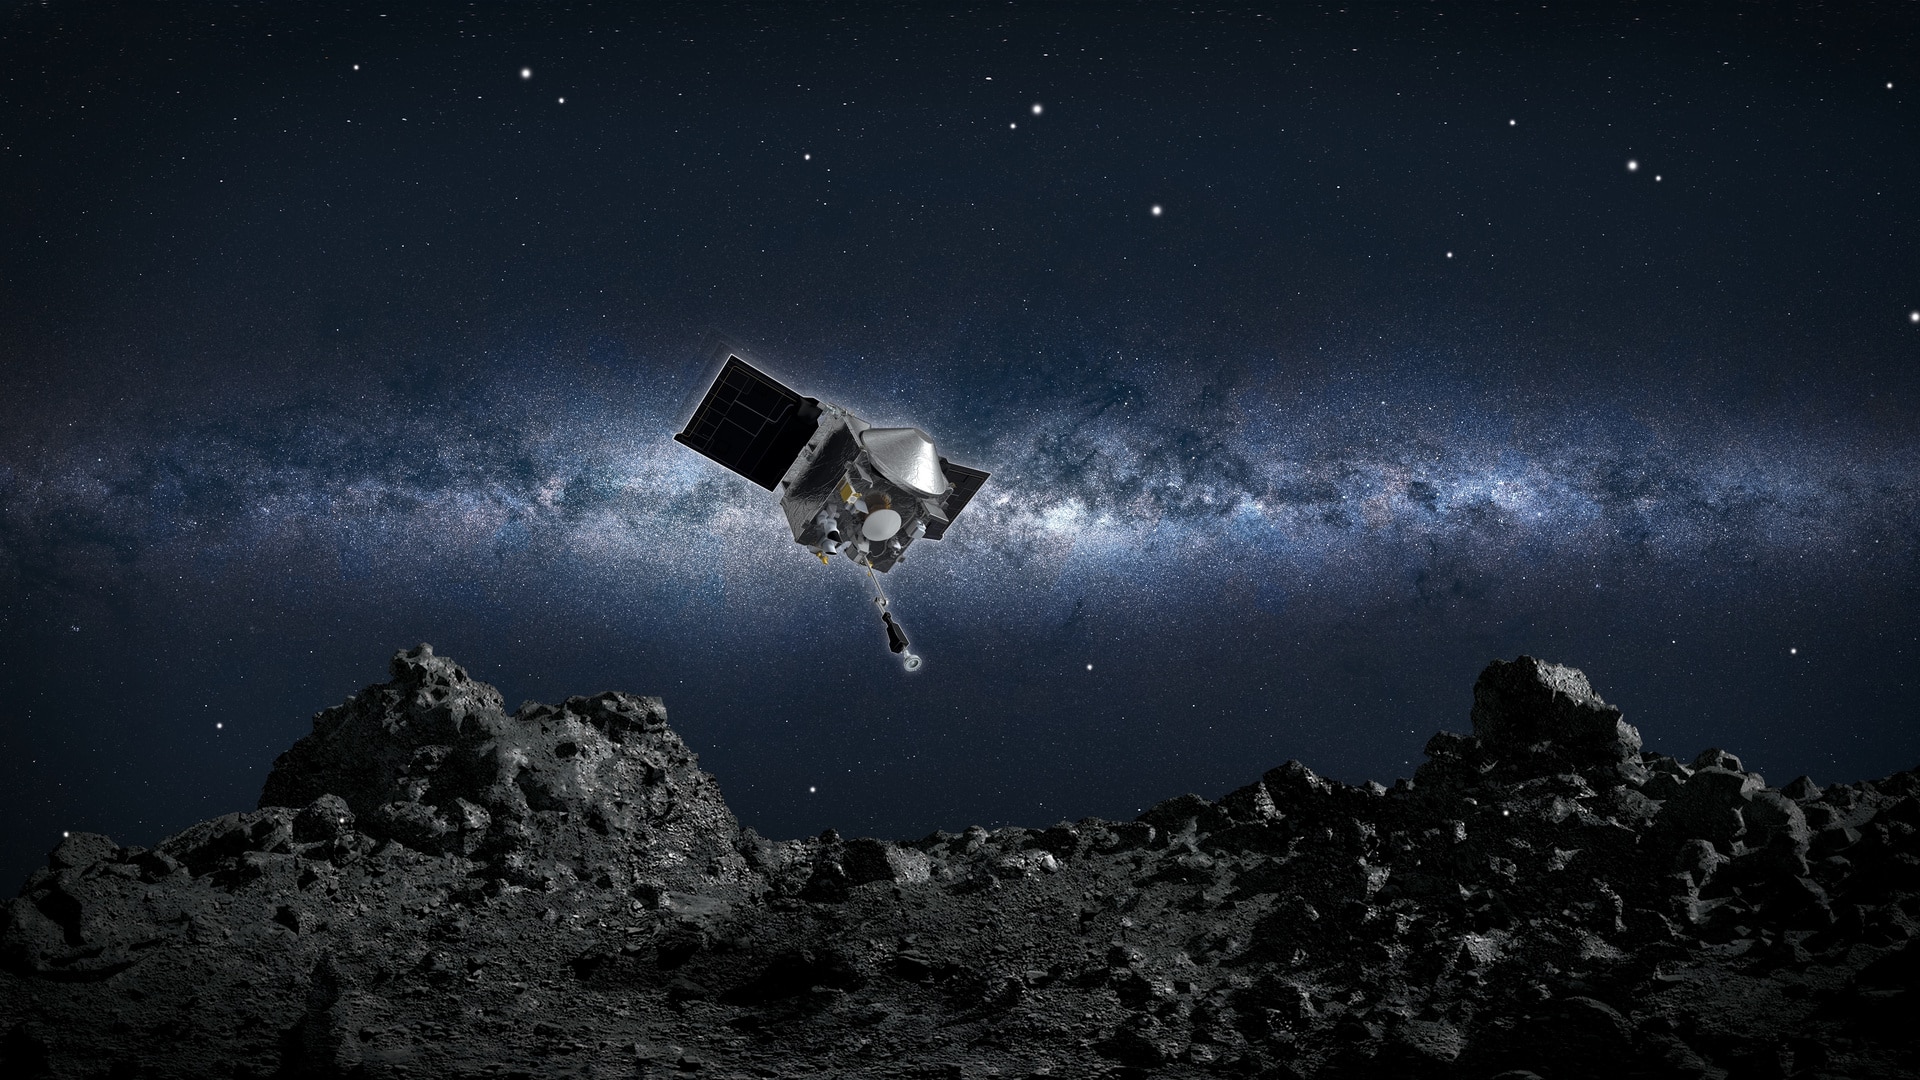 OSIRIS-REx совершит внеплановое «прощальное» сближение с астероидом Бенну перед полетом назад к Земле